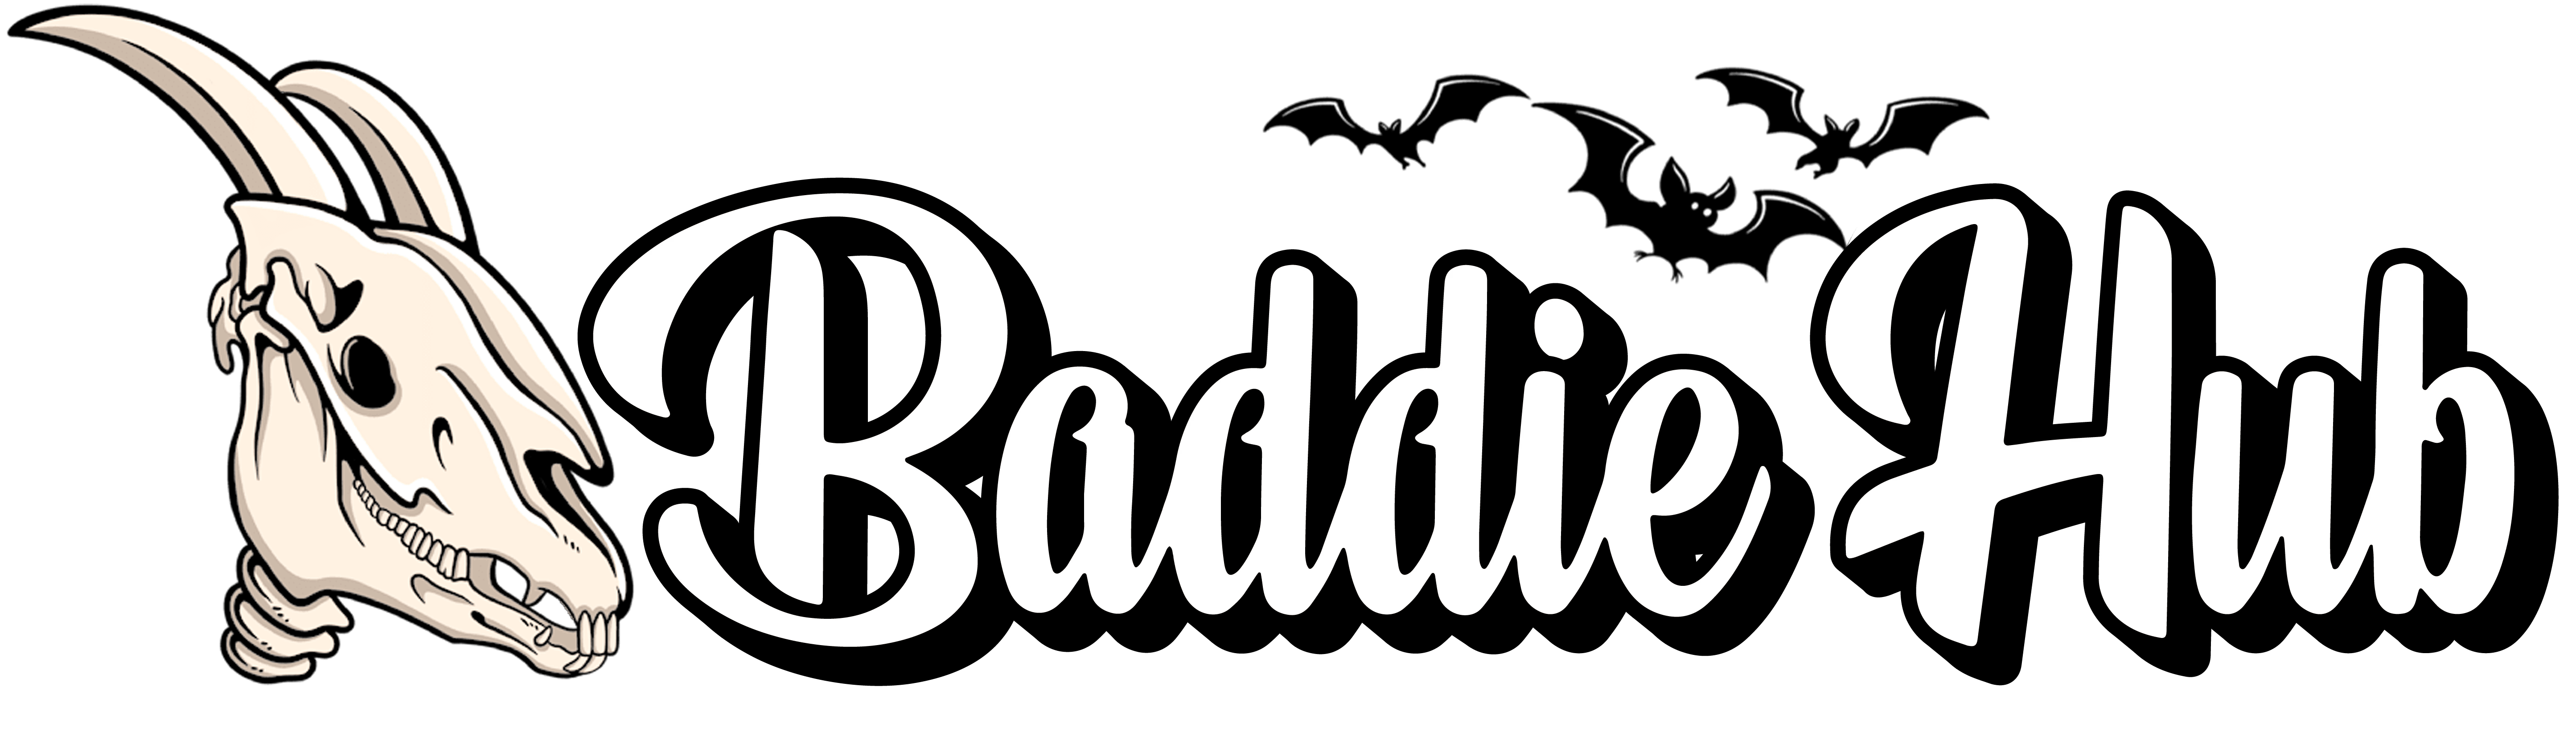 Baddies hub